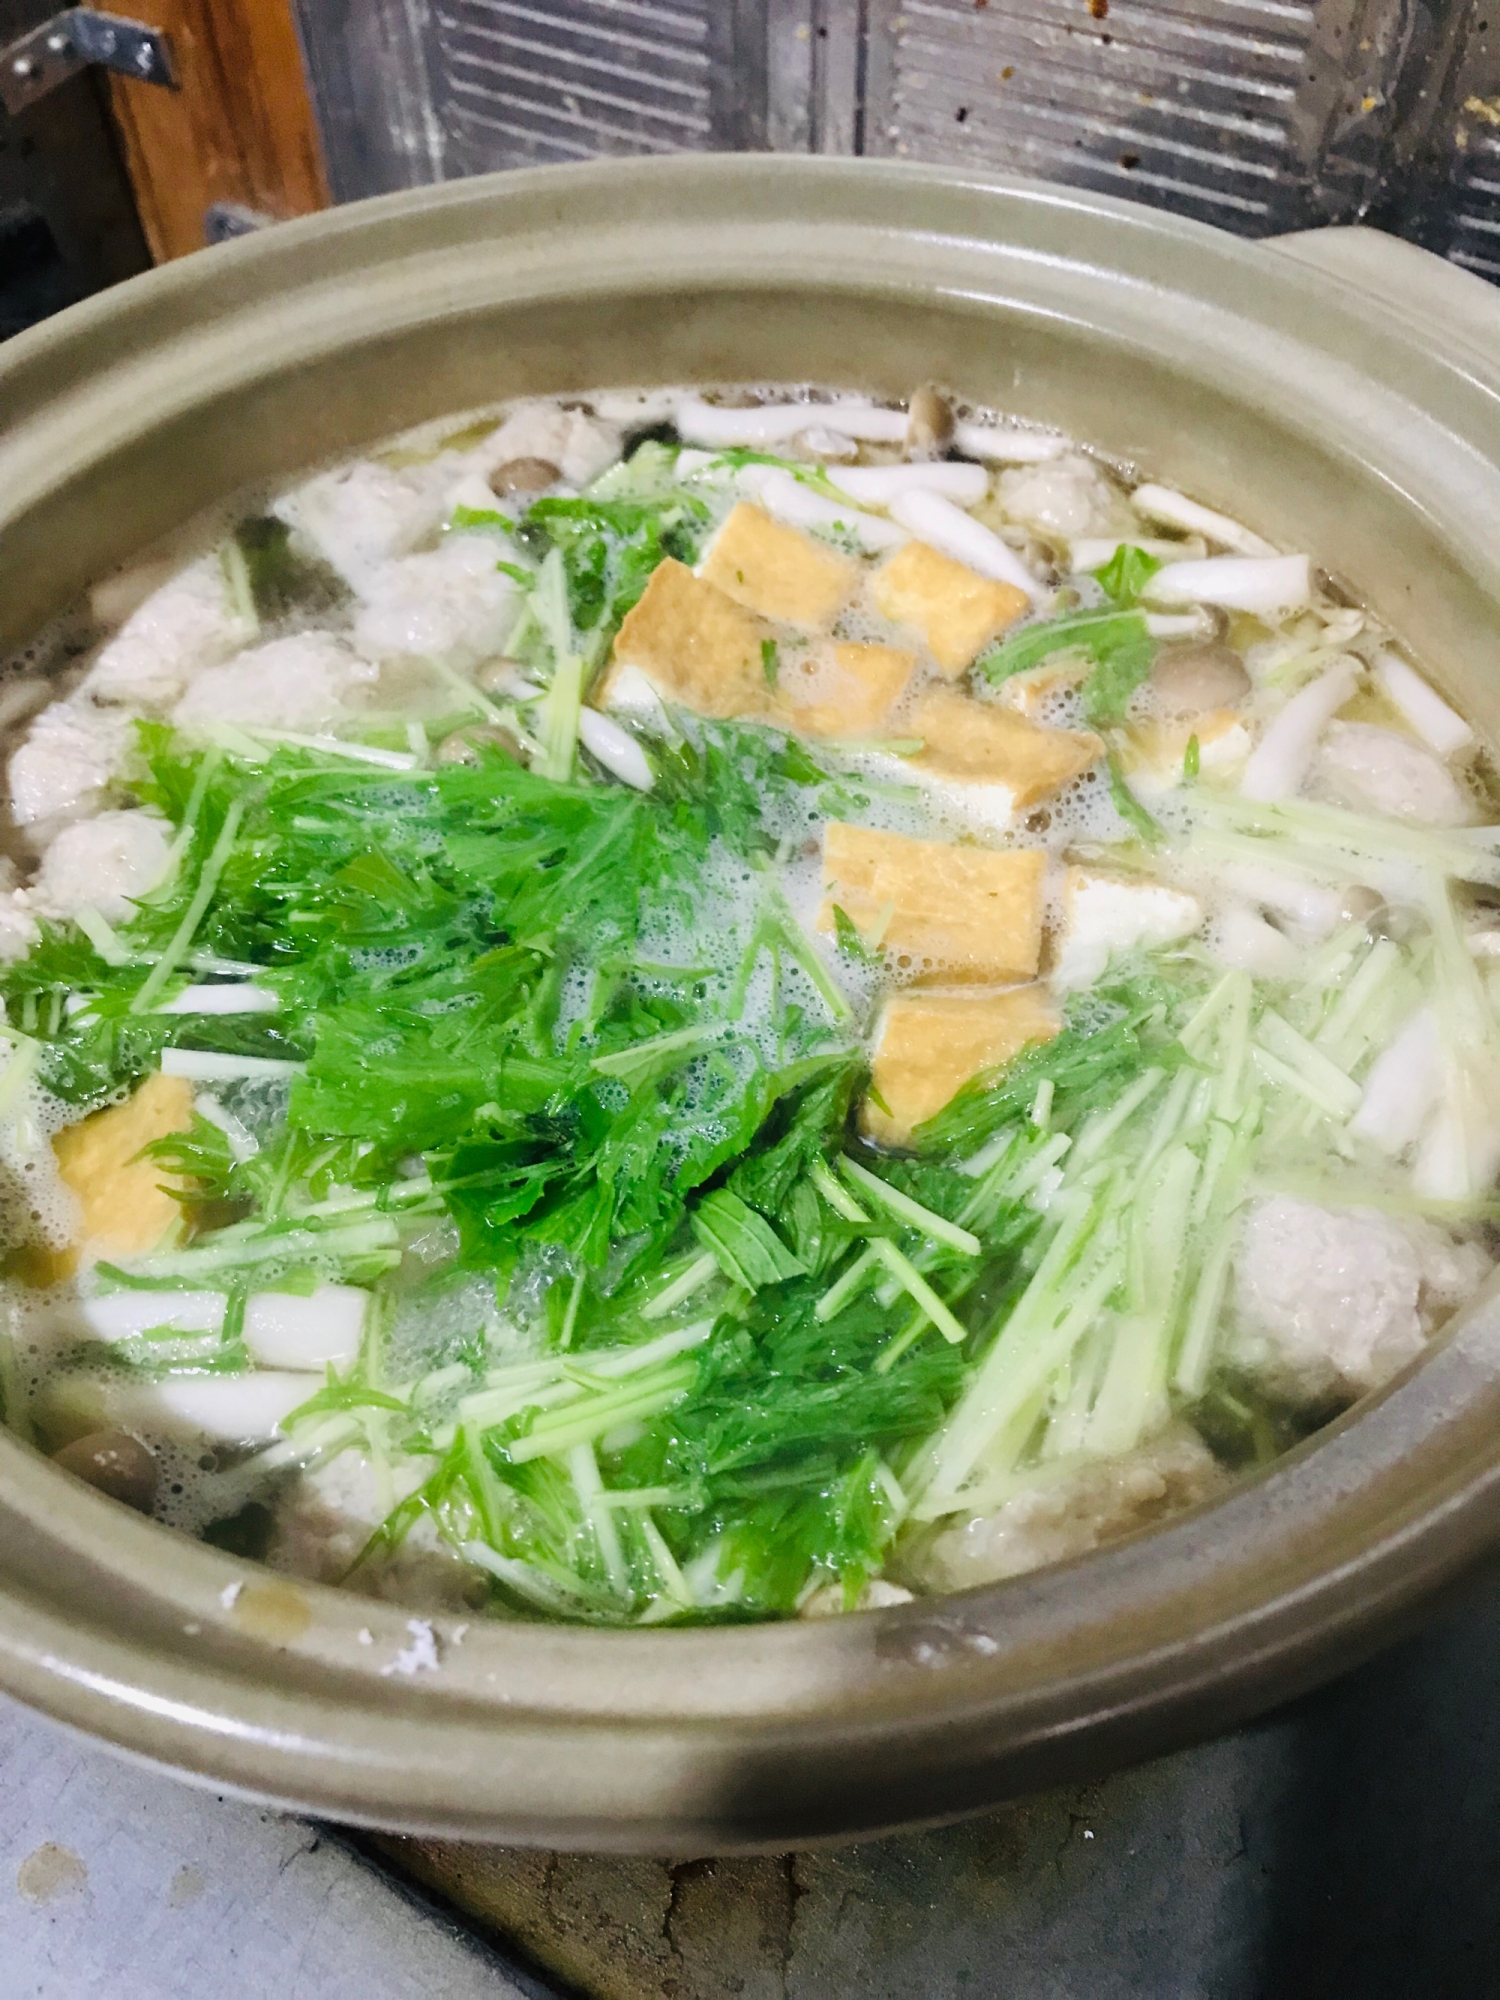 水菜と肉団子の塩麹鍋